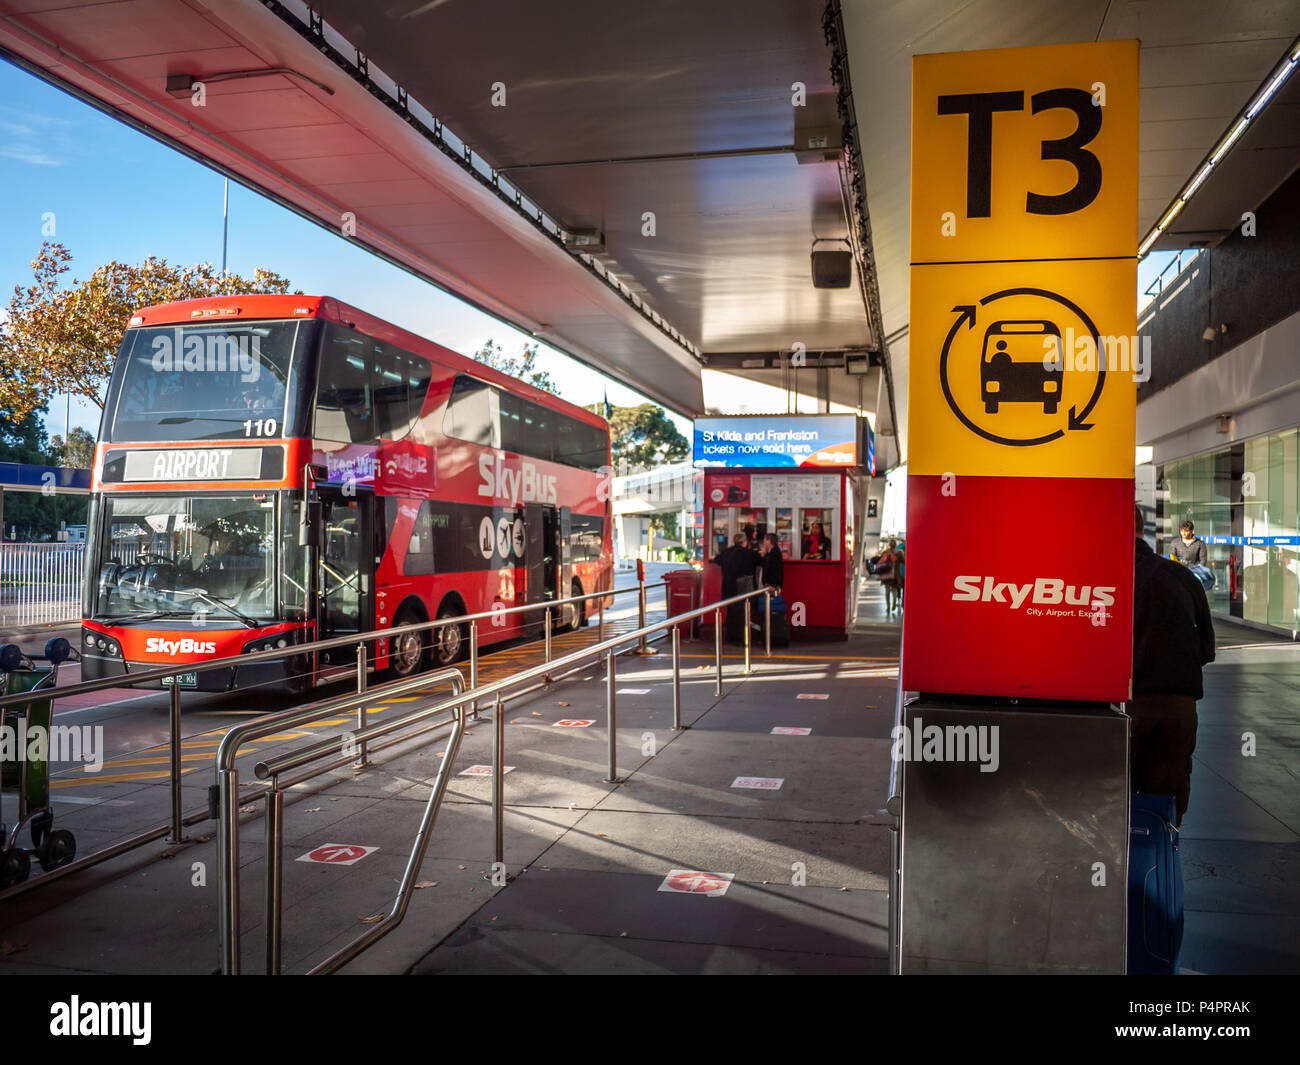 Zeichen der Skybus stop im Terminal 3 des Flughafen Tullamarine. Melbourne, Victoria/Australien. Skybus ist ein Airport Bus Service in Melbourne. Stockfoto